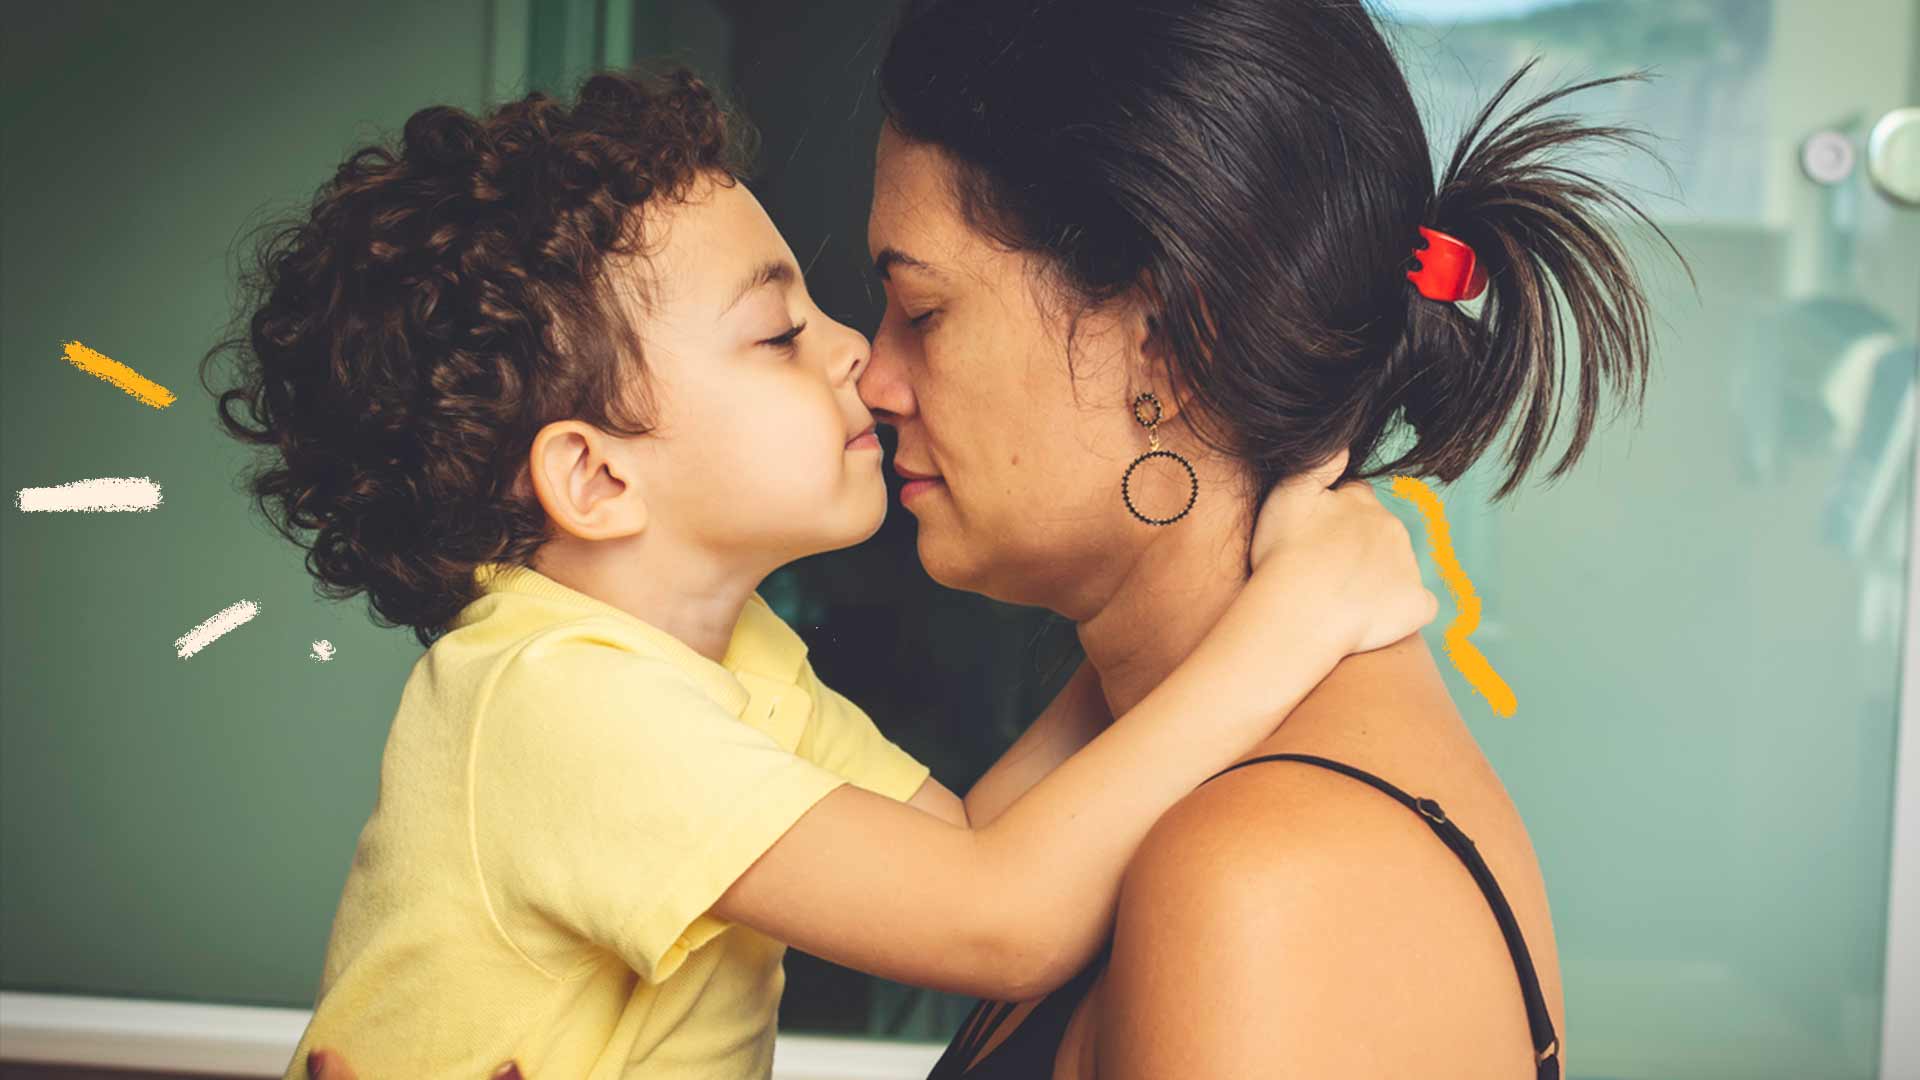 Músicas de mãe para filho: foto de uma mulher e uma criança que estão abraçados. A criança beija o nariz da mulher.